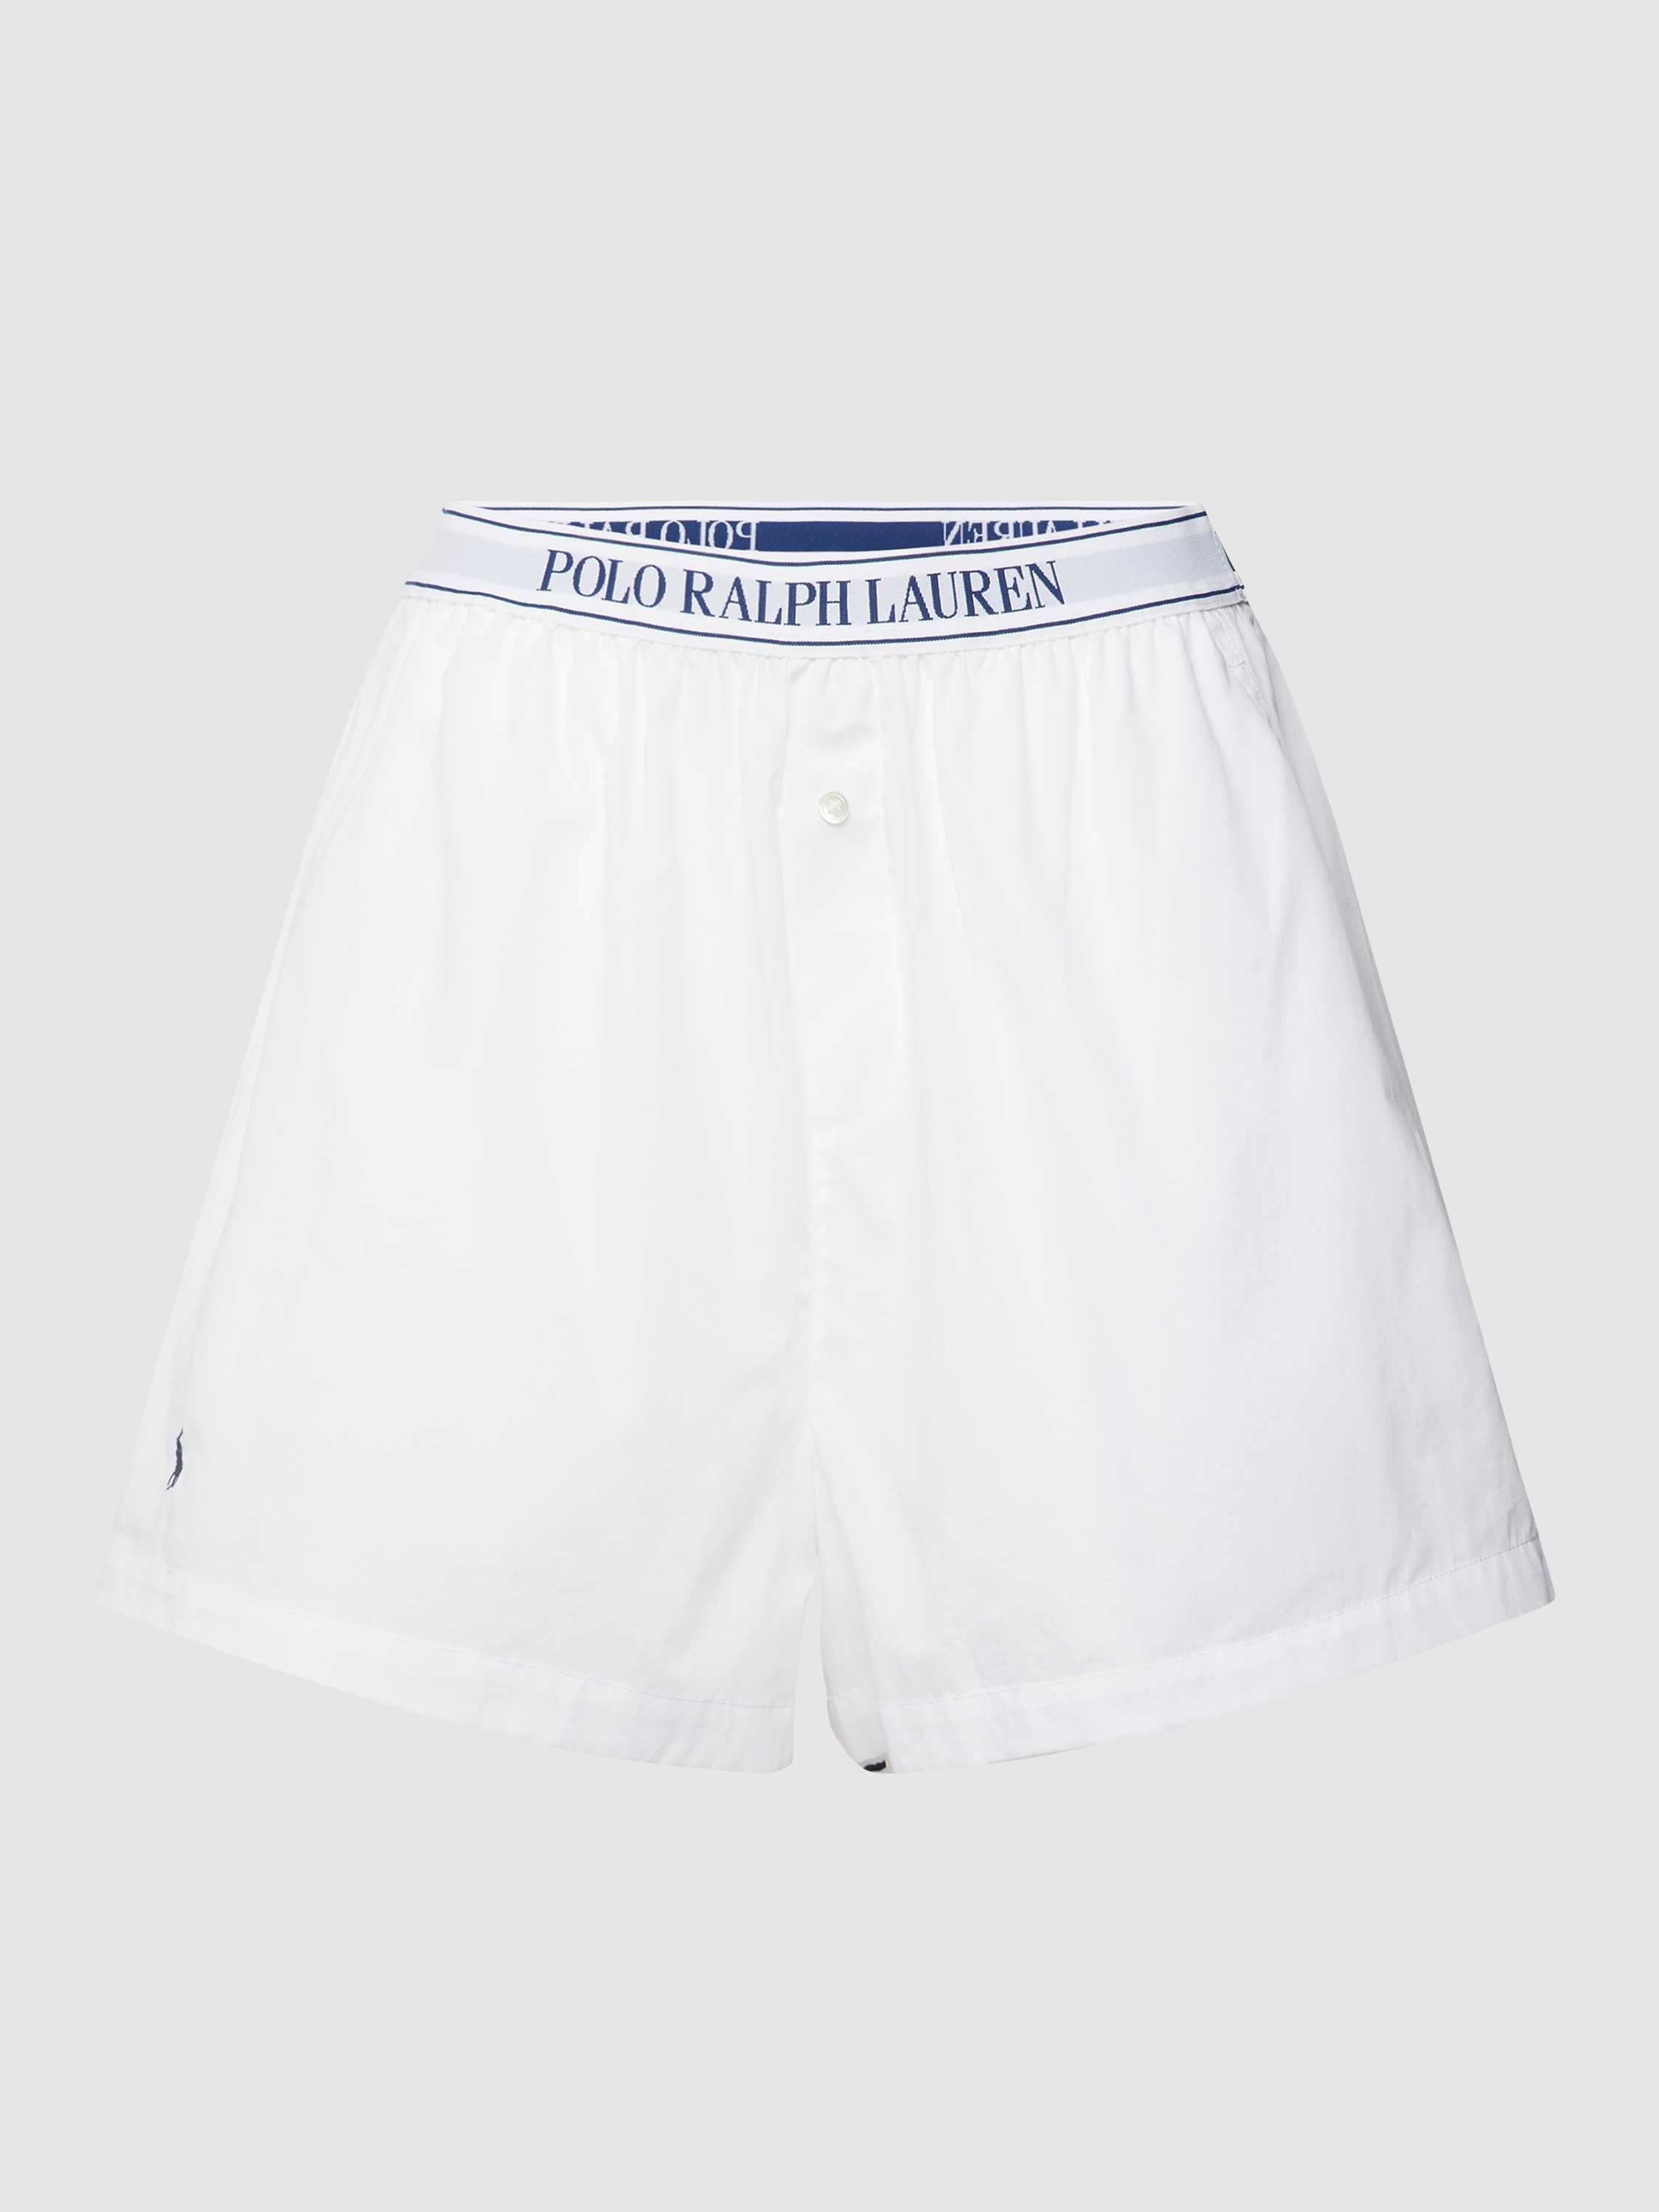 Pyjama-Shorts mit elastischem Logo-Bund